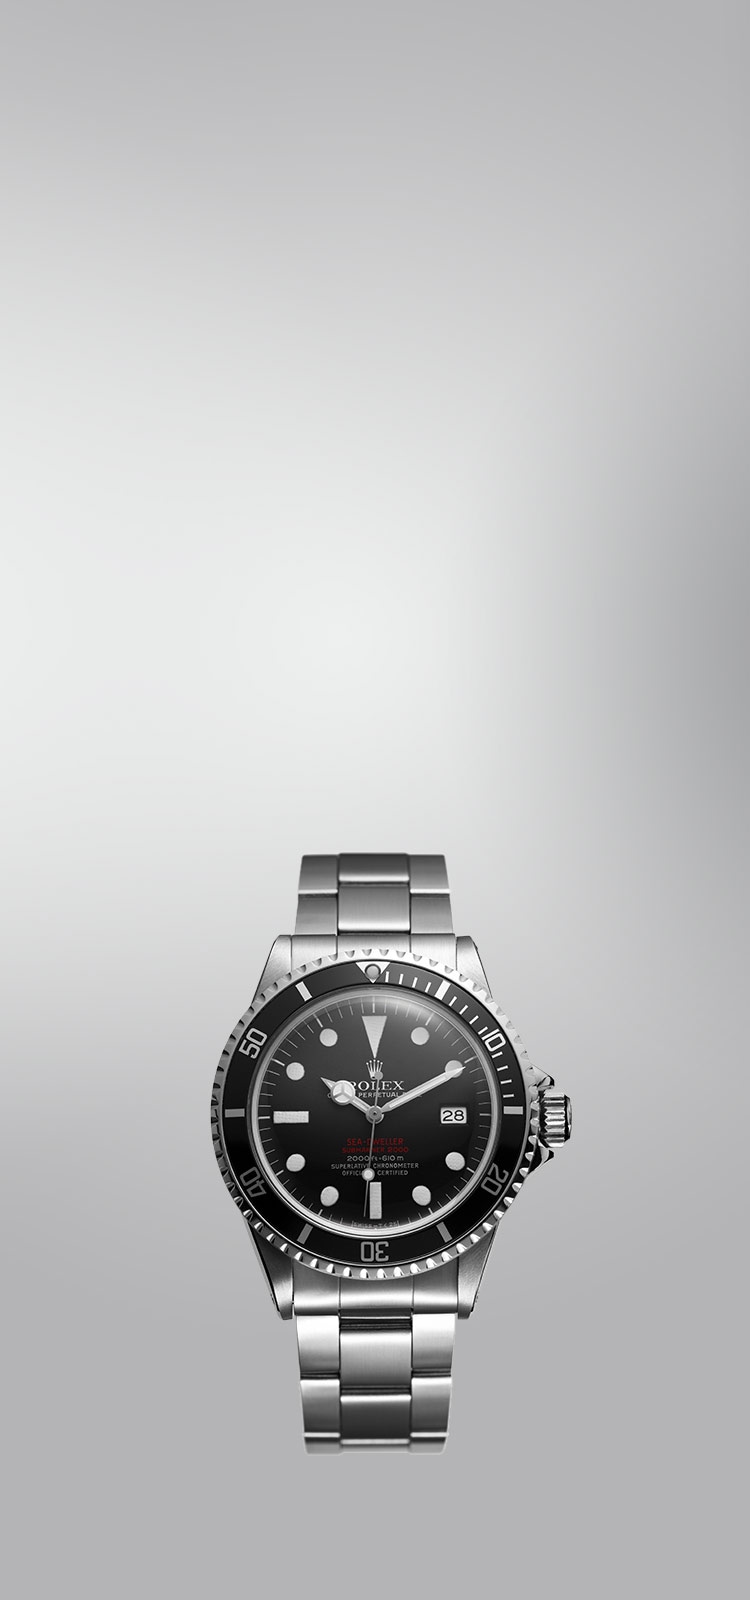 Rolex Rolex Rolex GMT Master II 126715CHNR Black Dial New Watch Men's Watch